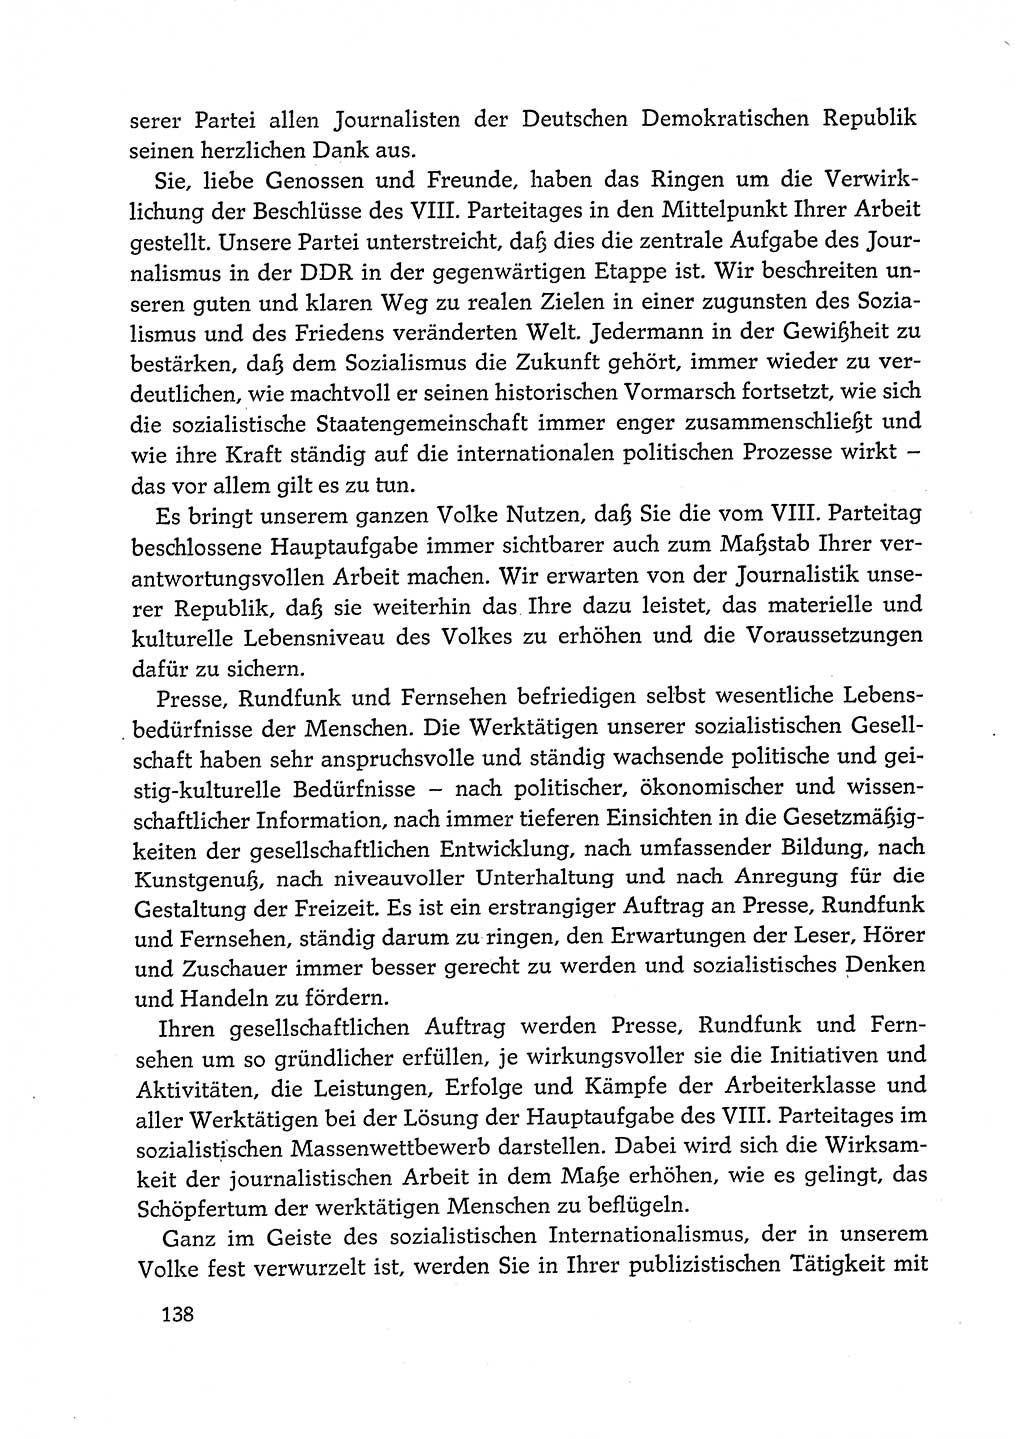 Dokumente der Sozialistischen Einheitspartei Deutschlands (SED) [Deutsche Demokratische Republik (DDR)] 1972-1973, Seite 138 (Dok. SED DDR 1972-1973, S. 138)